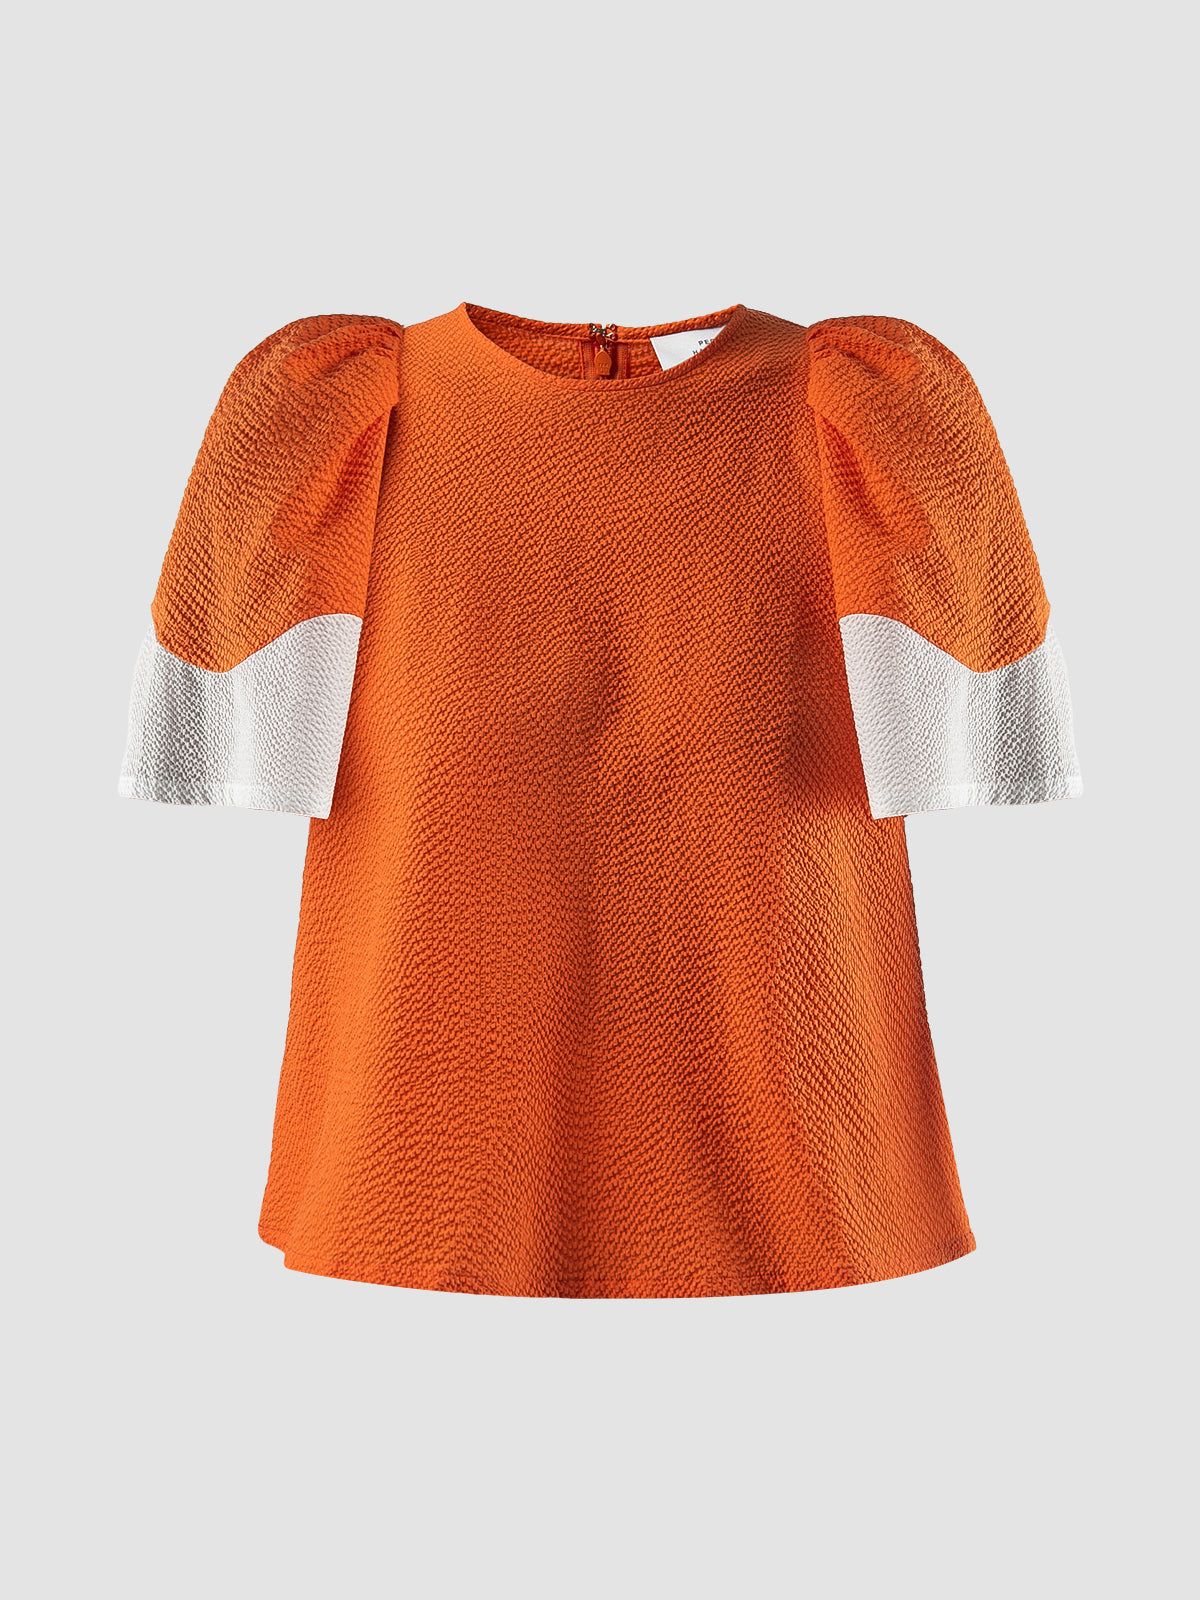 Orange Fluke short-sleeved blouse